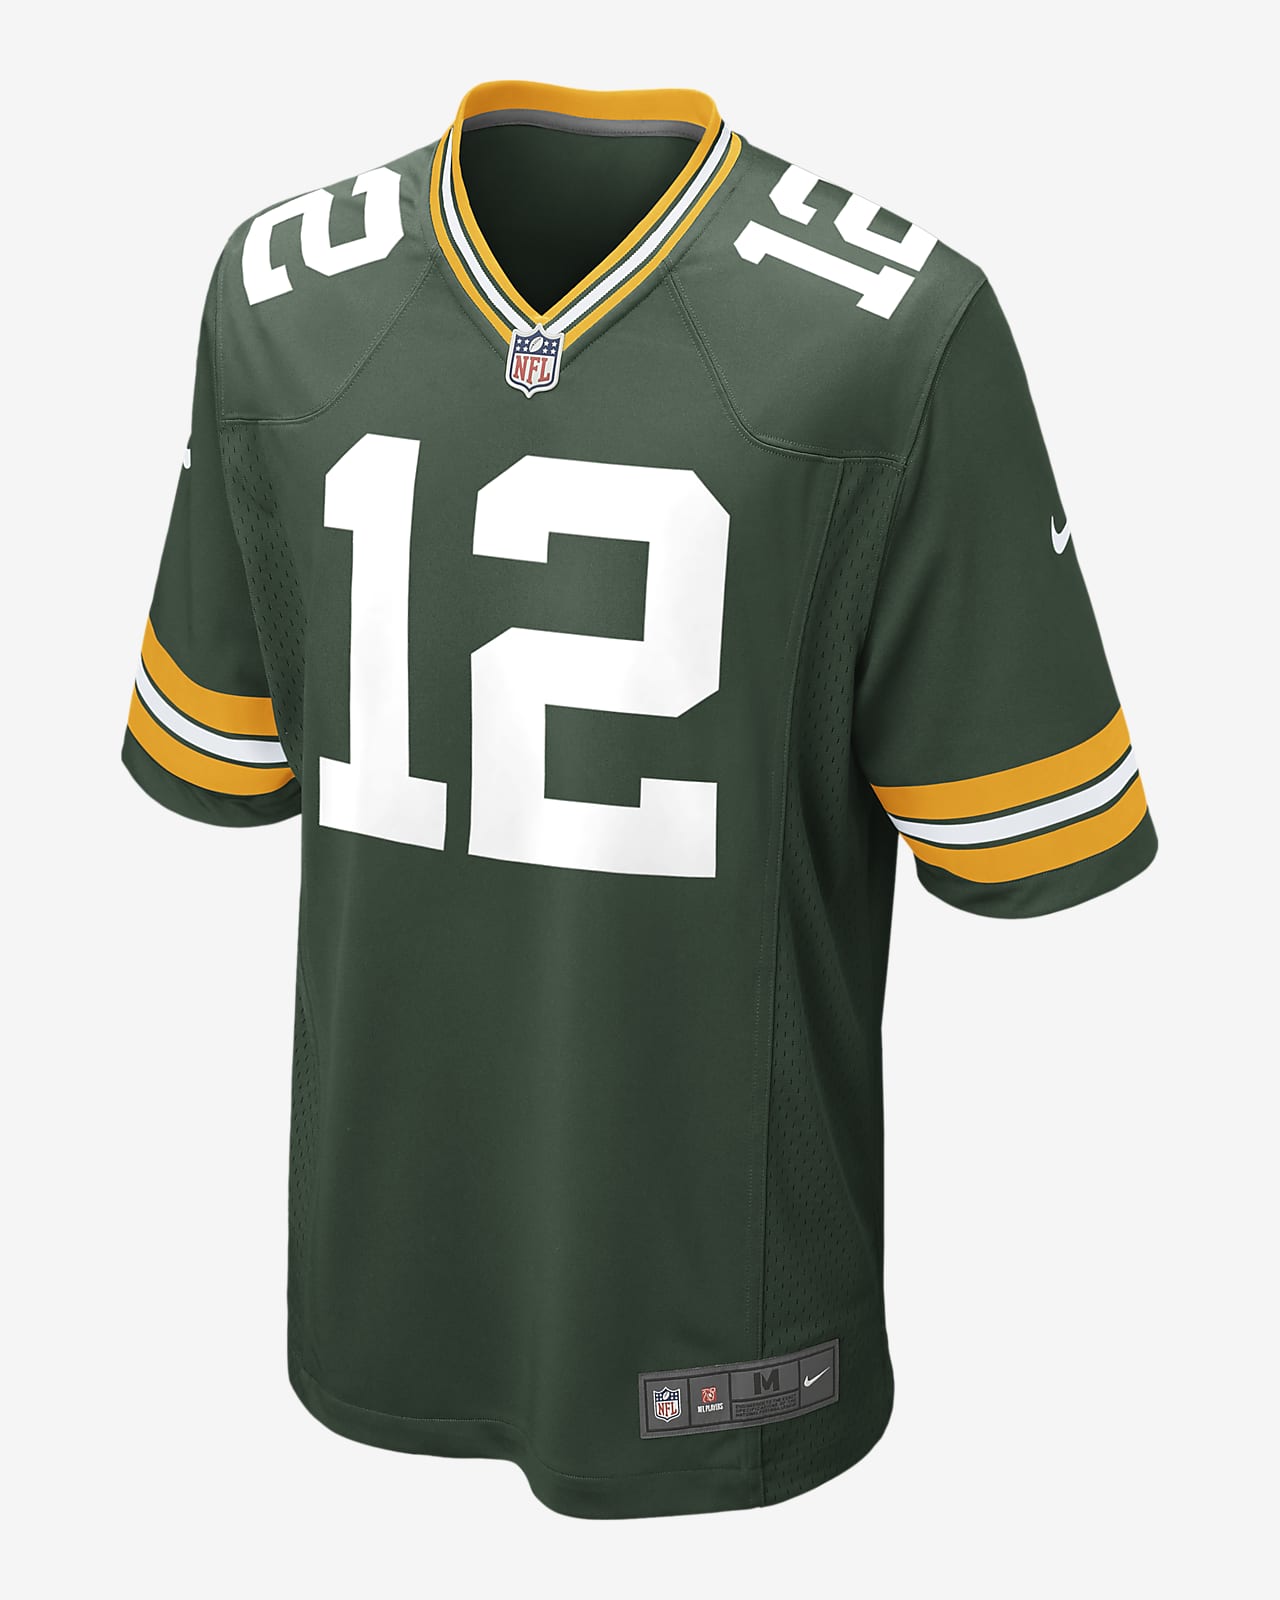 NFL Green Bay Packers (Aaron Rodgers) Camiseta de fútbol americano - Hombre